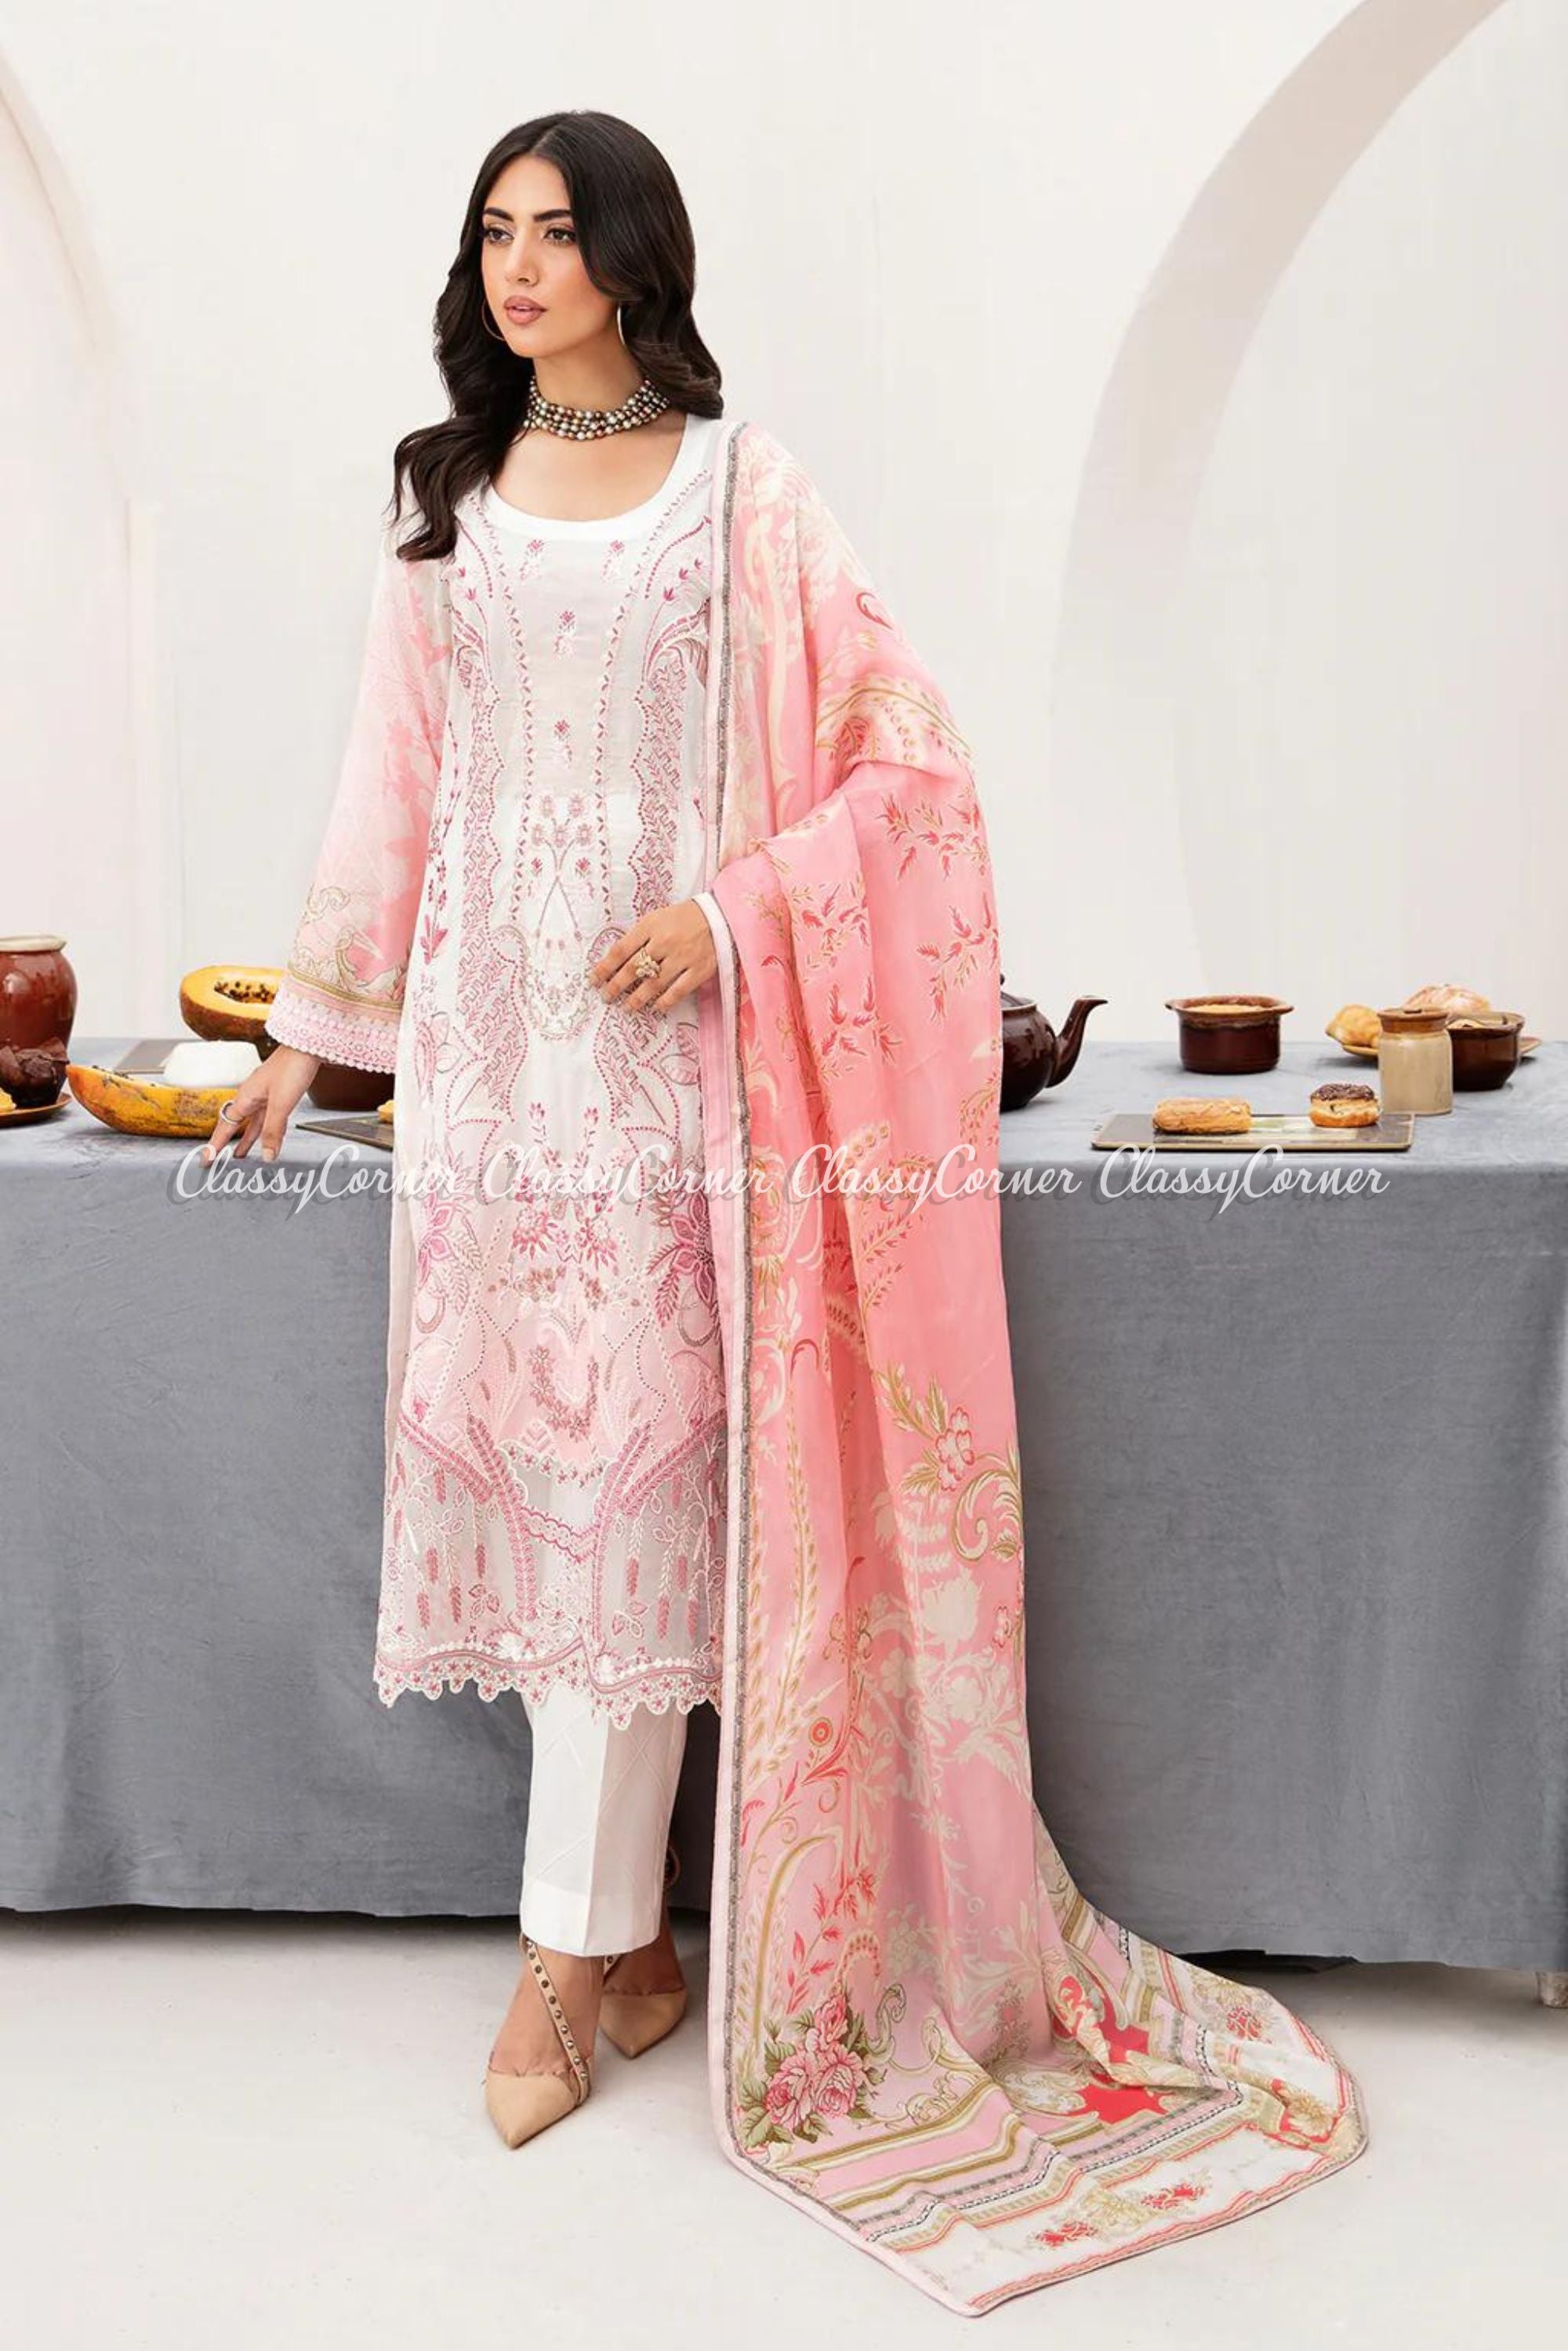 Women's Semi Formal Wear For Pakistani Events